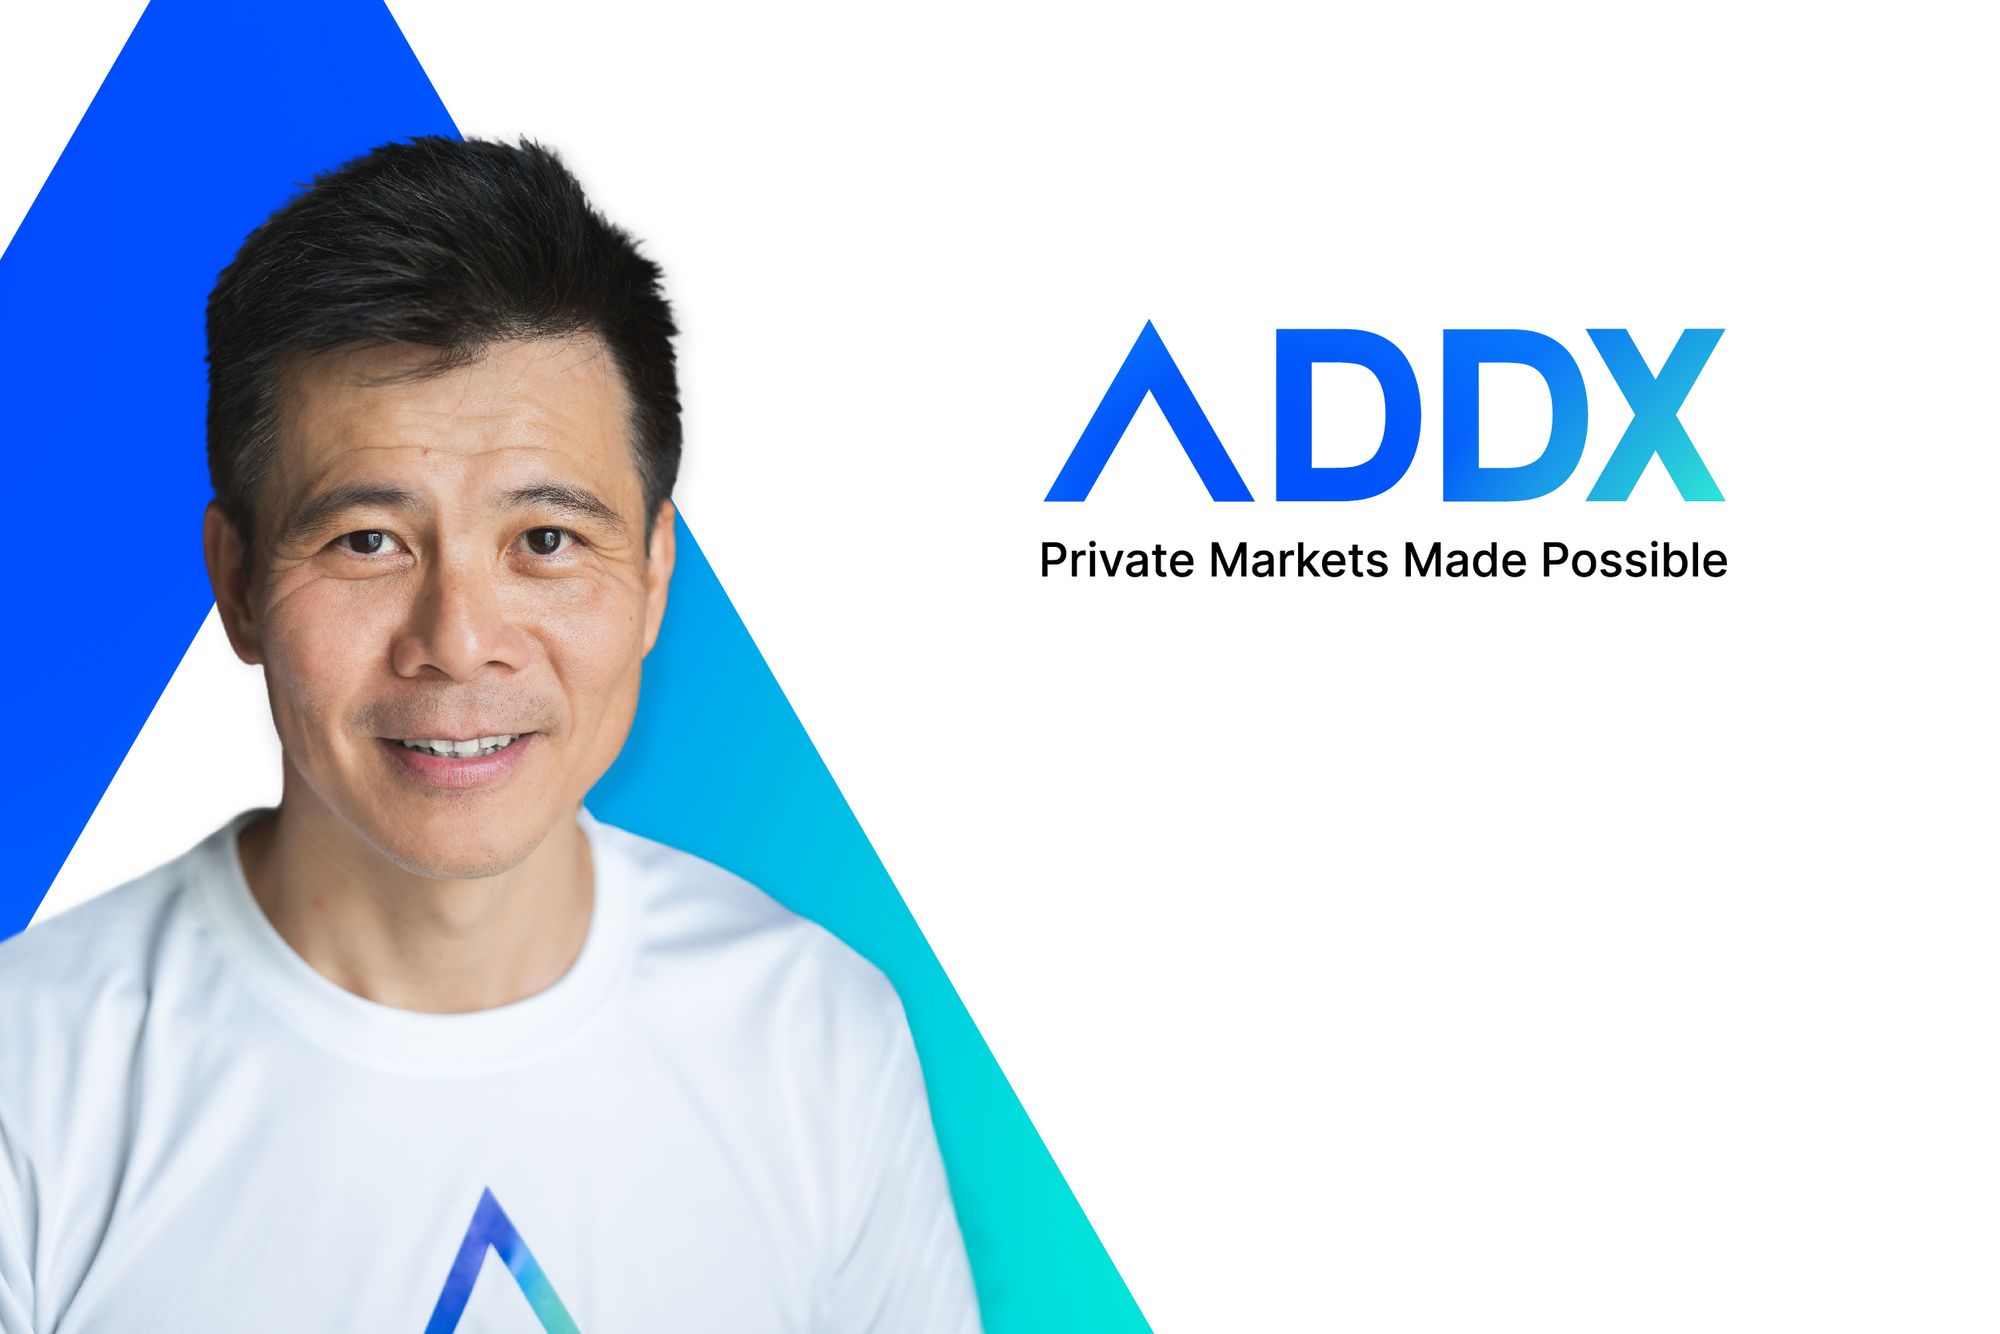 Meet ADDX